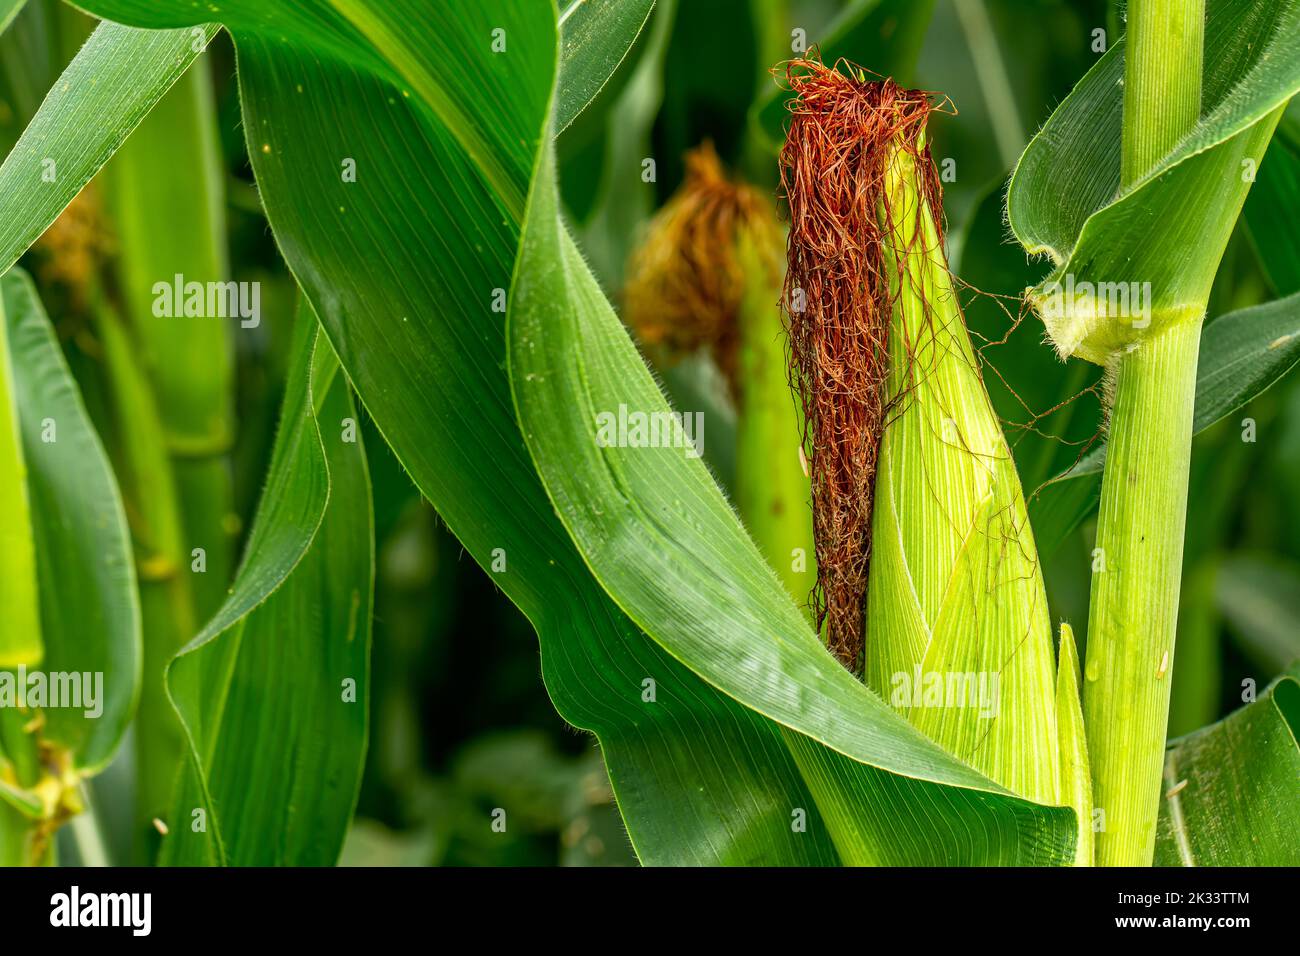 Eine junge Maisfrucht, deren Blütenhaar in Form von braunem Haar ist, ist noch angehängt, der Anbau der Lebensmittelindustrie Pflanze Stockfoto